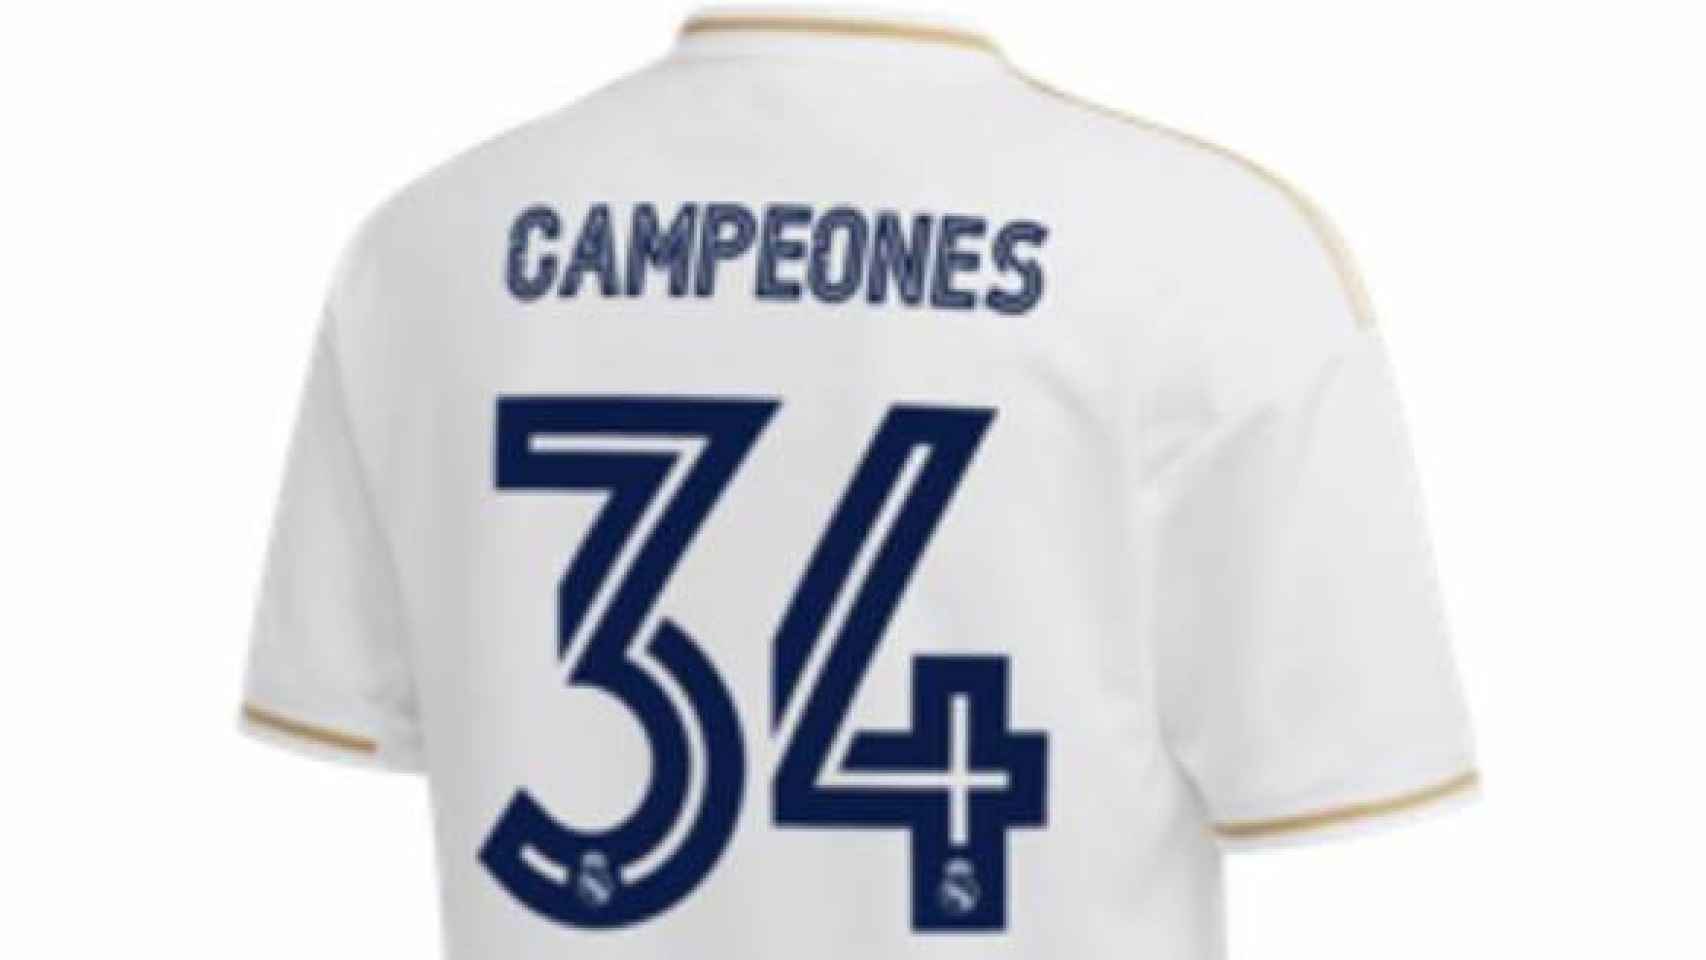 Así es la camiseta del Real Madrid conmemorativa por los campeones de La Liga 2019/2020